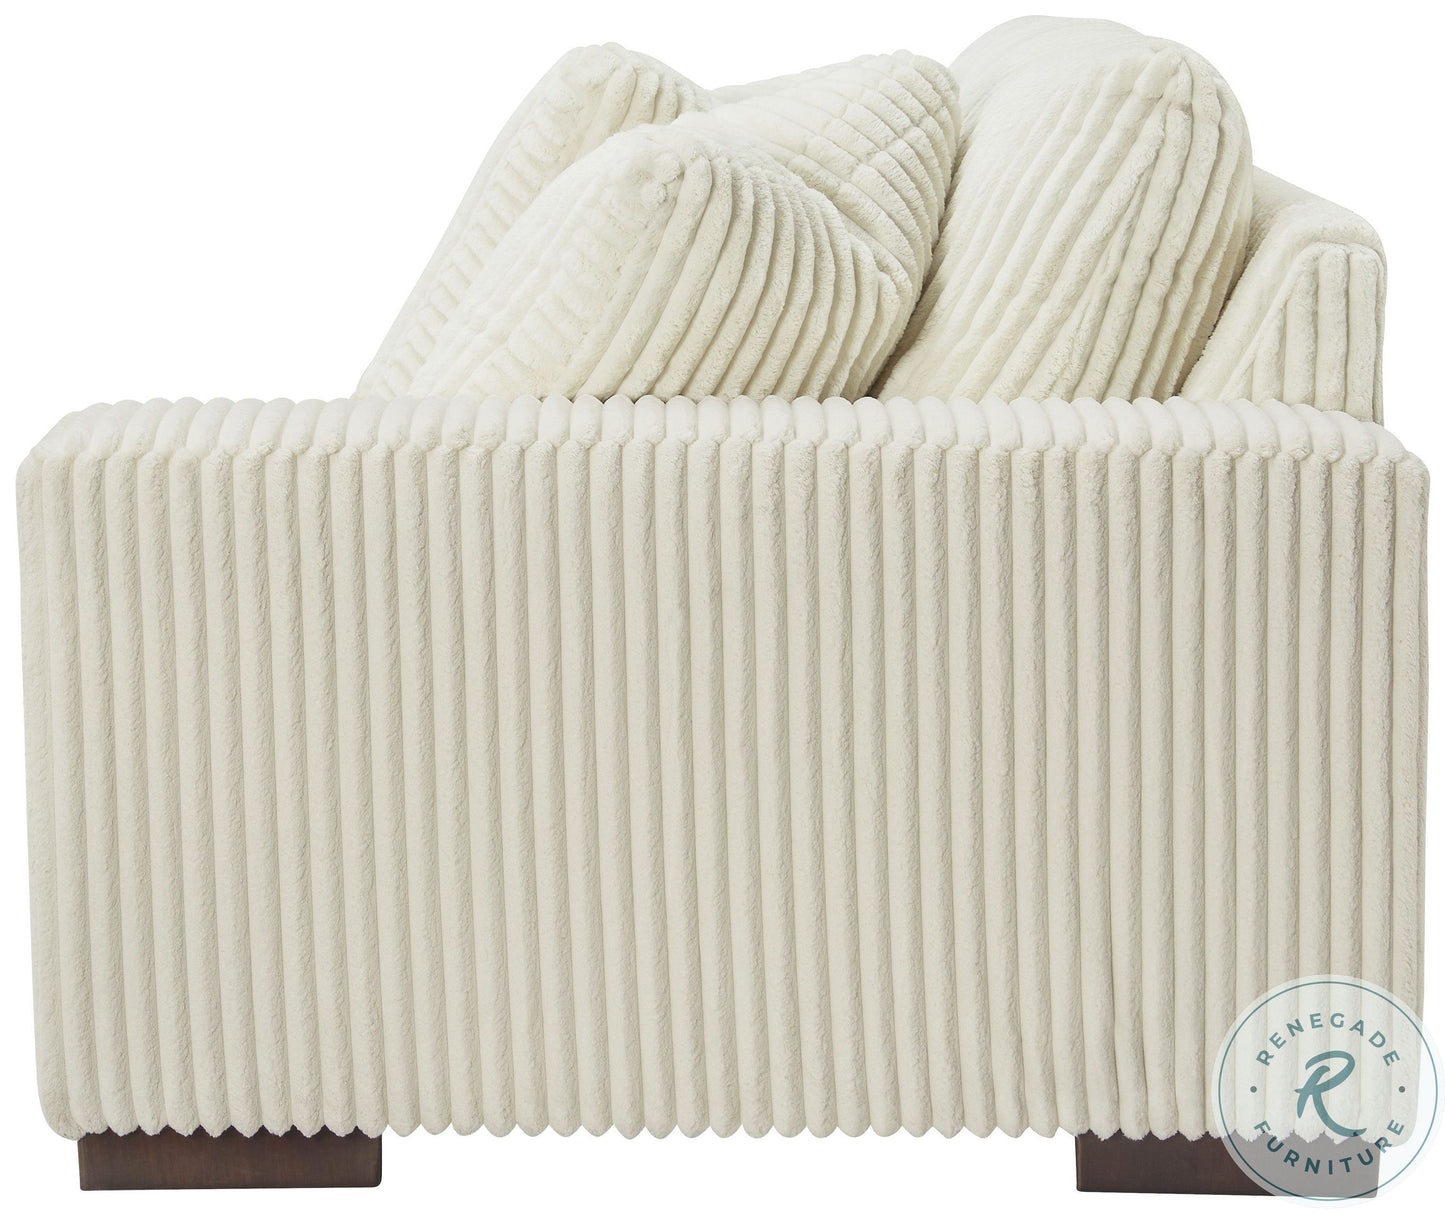 Lindyn Ivory Modular Sofa